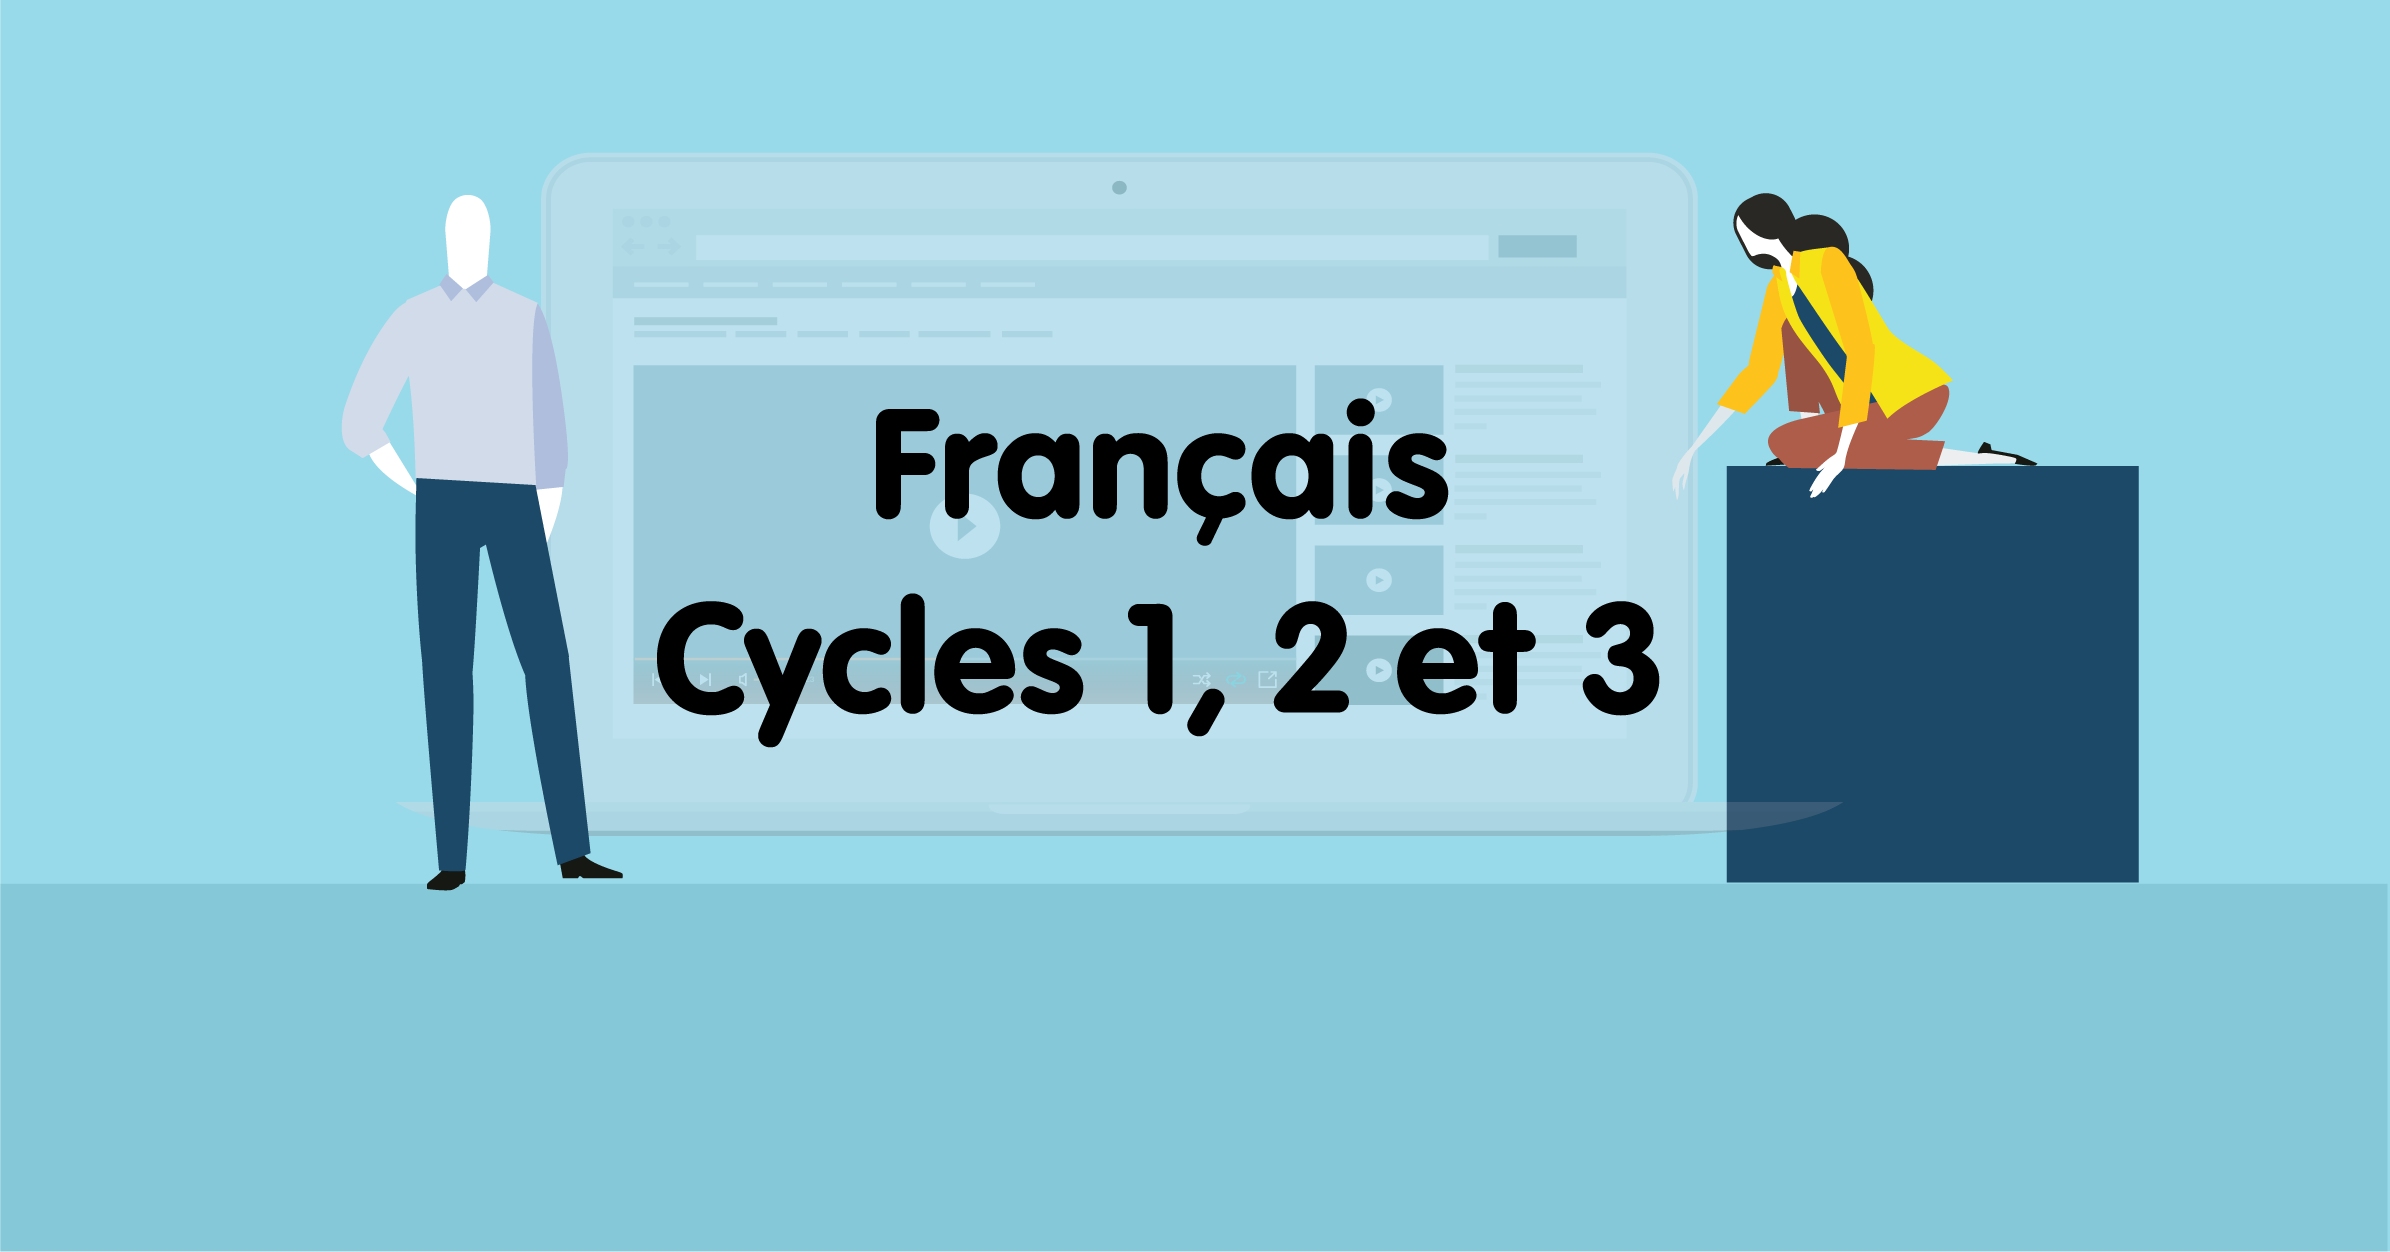 DANE Nancy-Metz Français en cycles 1, 2 et 3 DANE Nancy-Metz professeur école ressources brne cycle